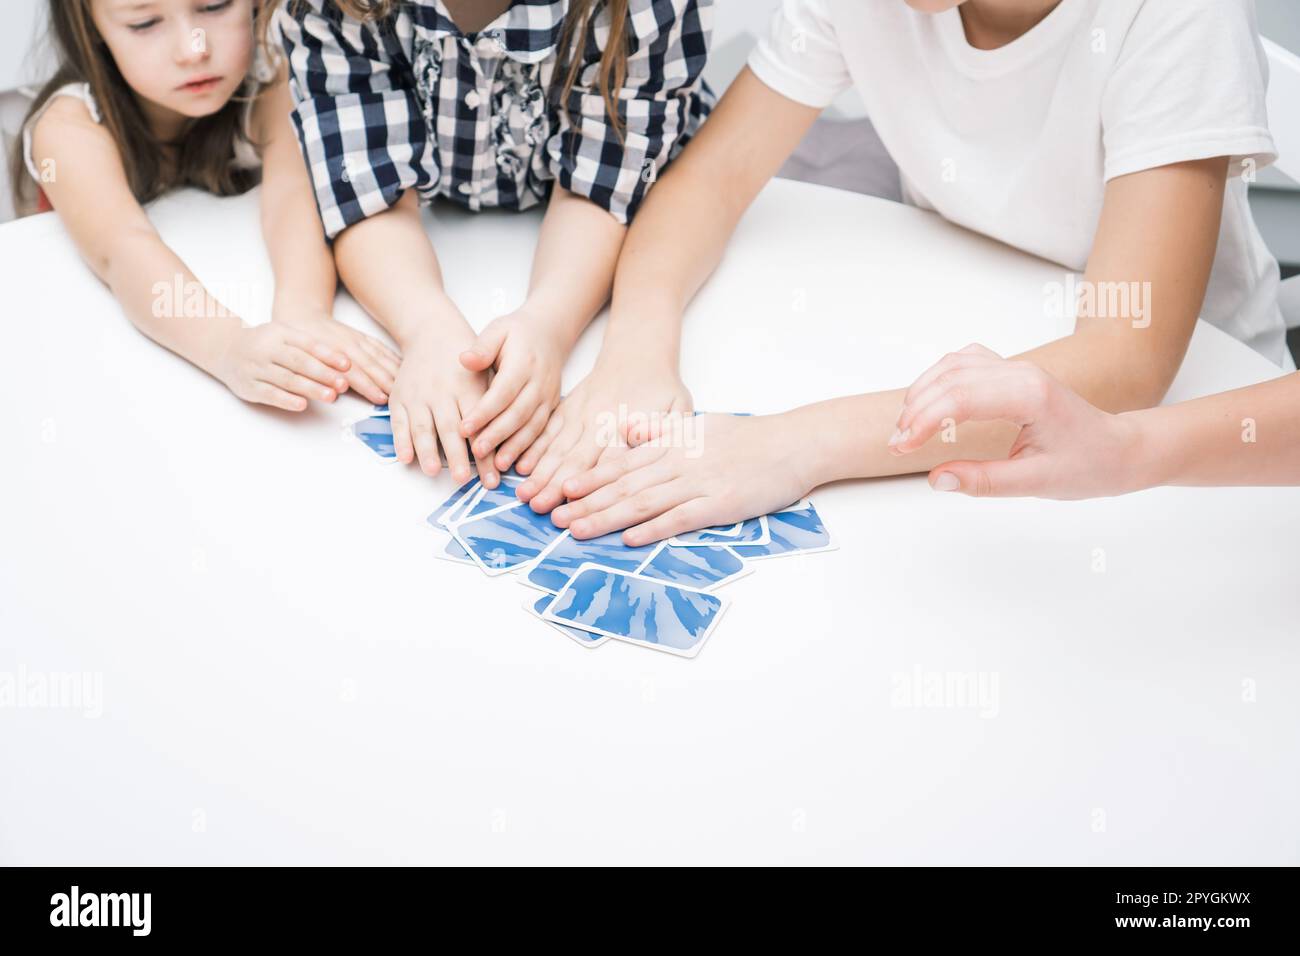 Les mains des enfants recadrées méconnaissables tiennent des cartes à jouer bleues sur la table blanche. Jeu intelligent pour le temps, qui d'abord. Amusement en famille Banque D'Images